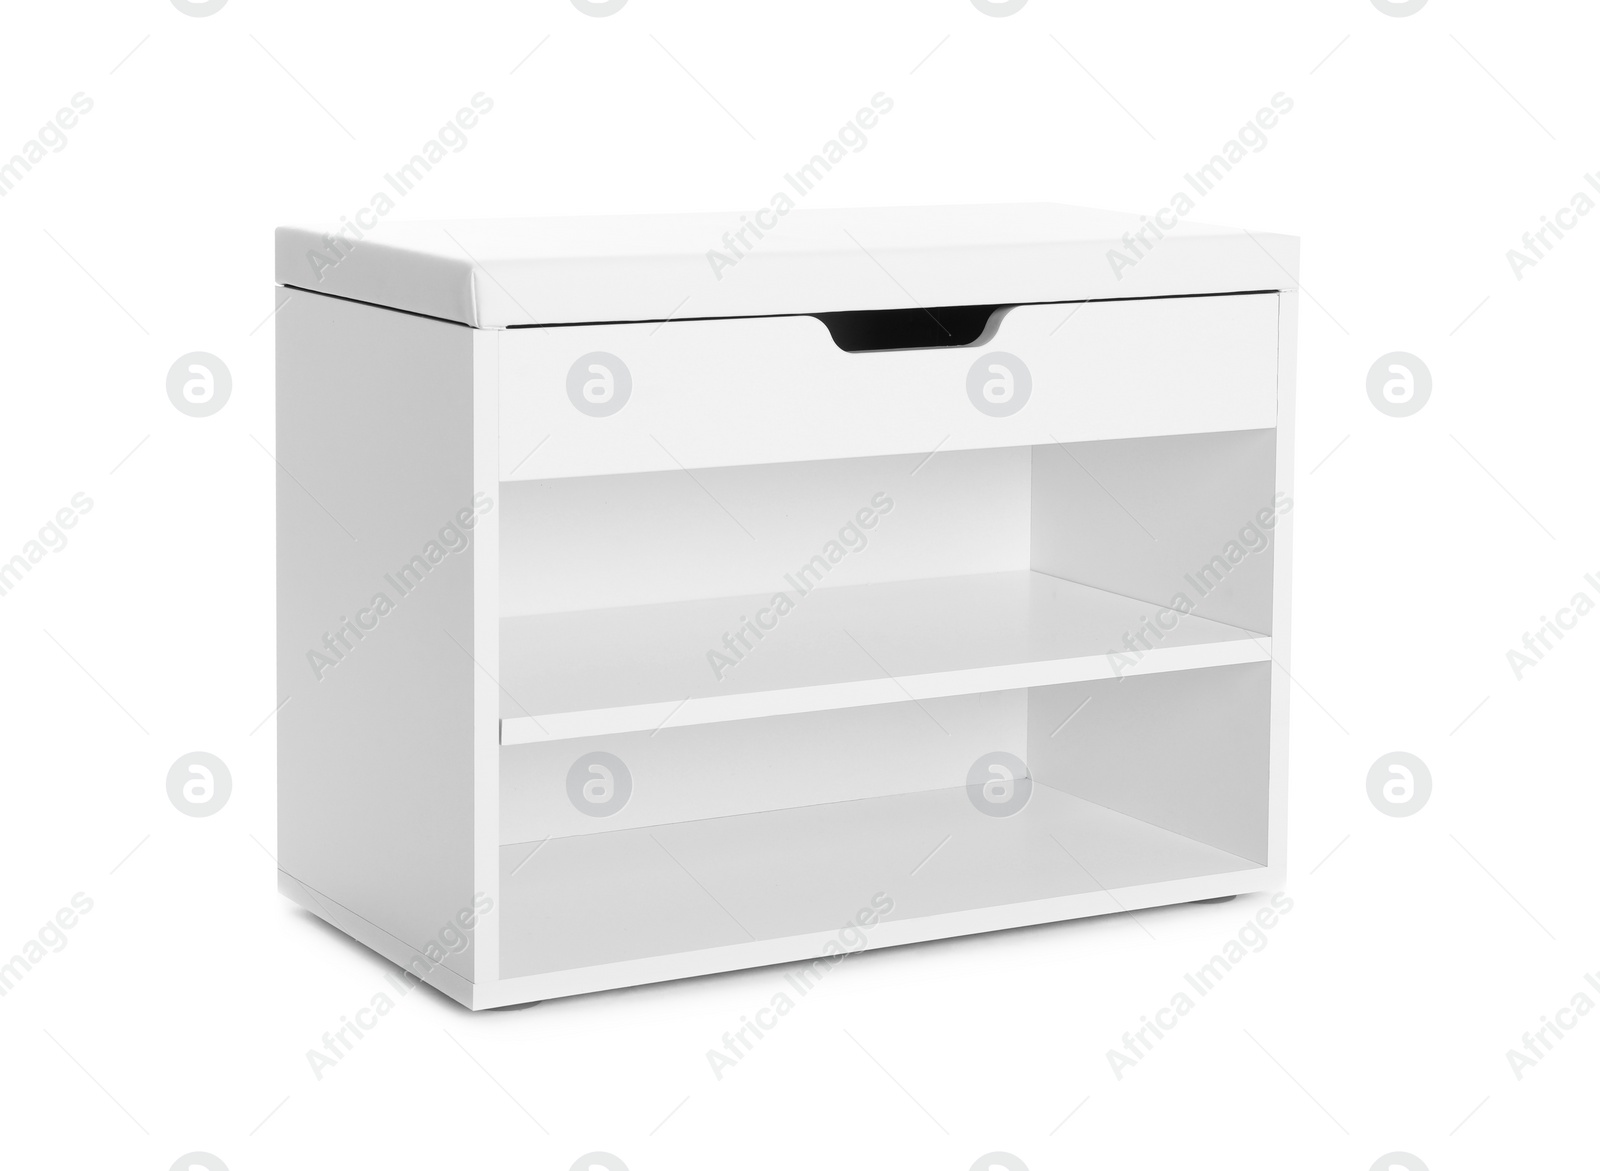 Photo of Stylish shoe storage cabinet isolated on white